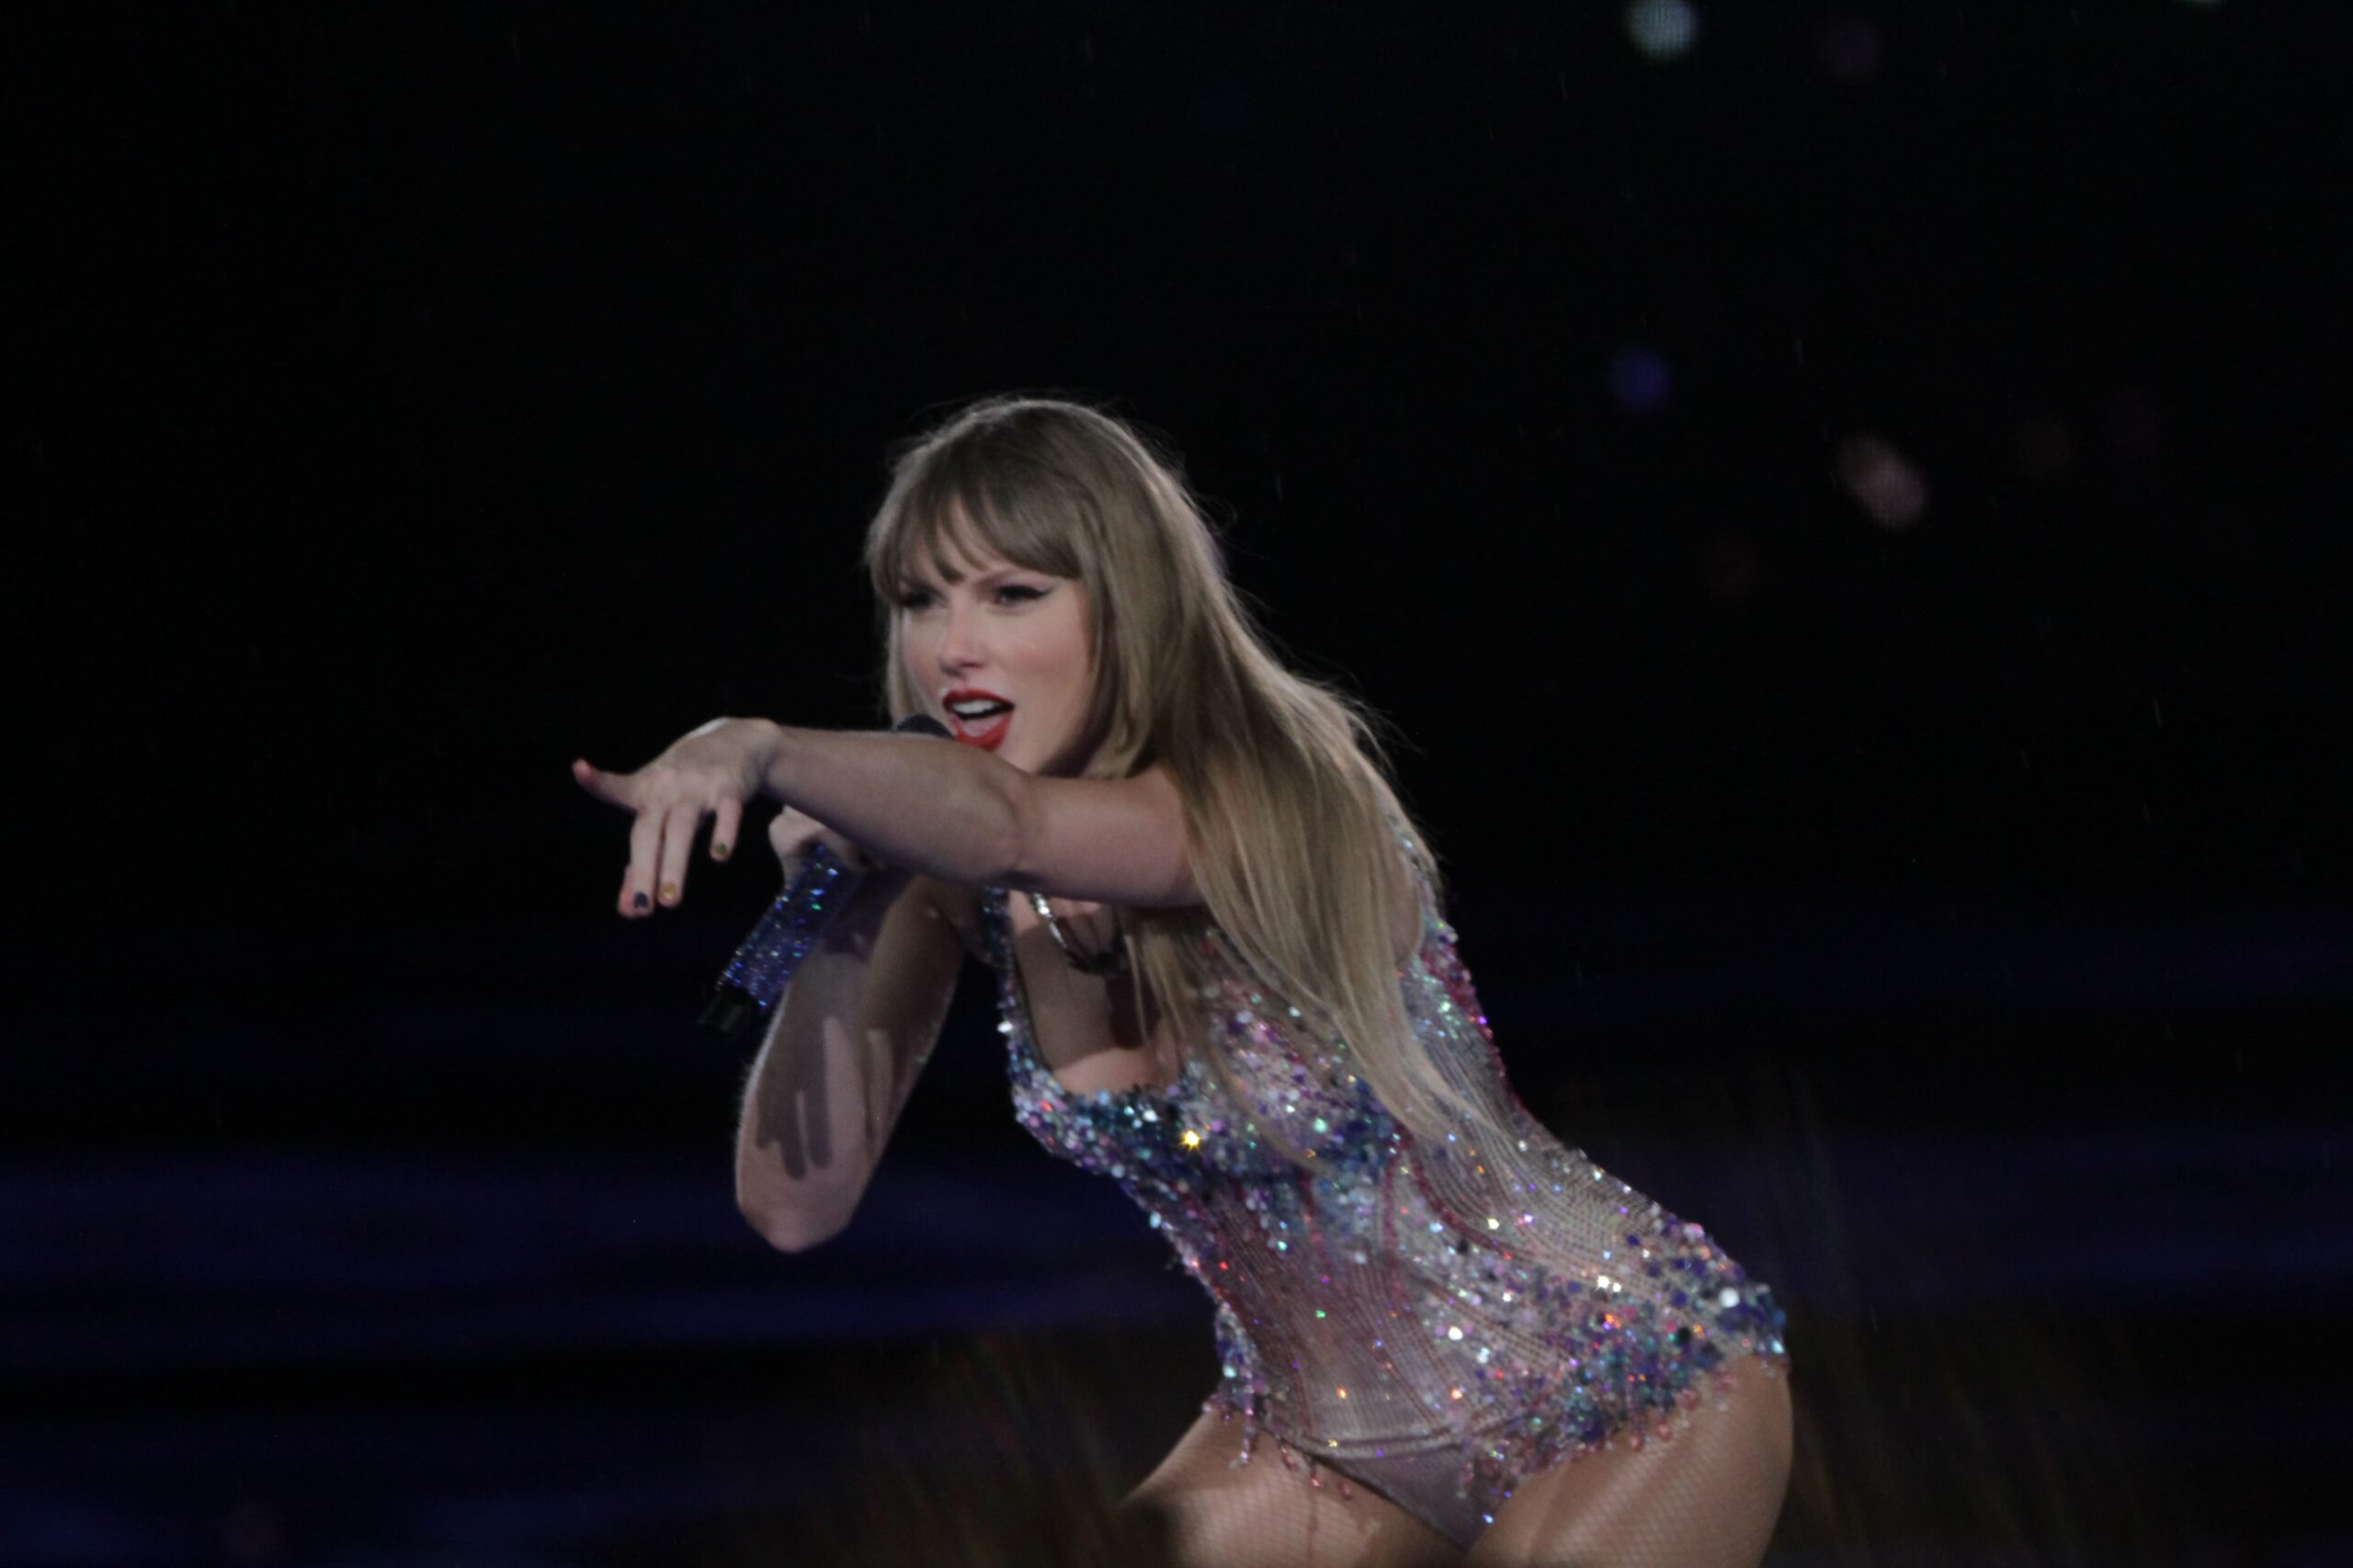 Fãs relatam golpe com ingressos falsos para show de Taylor Swift em SP